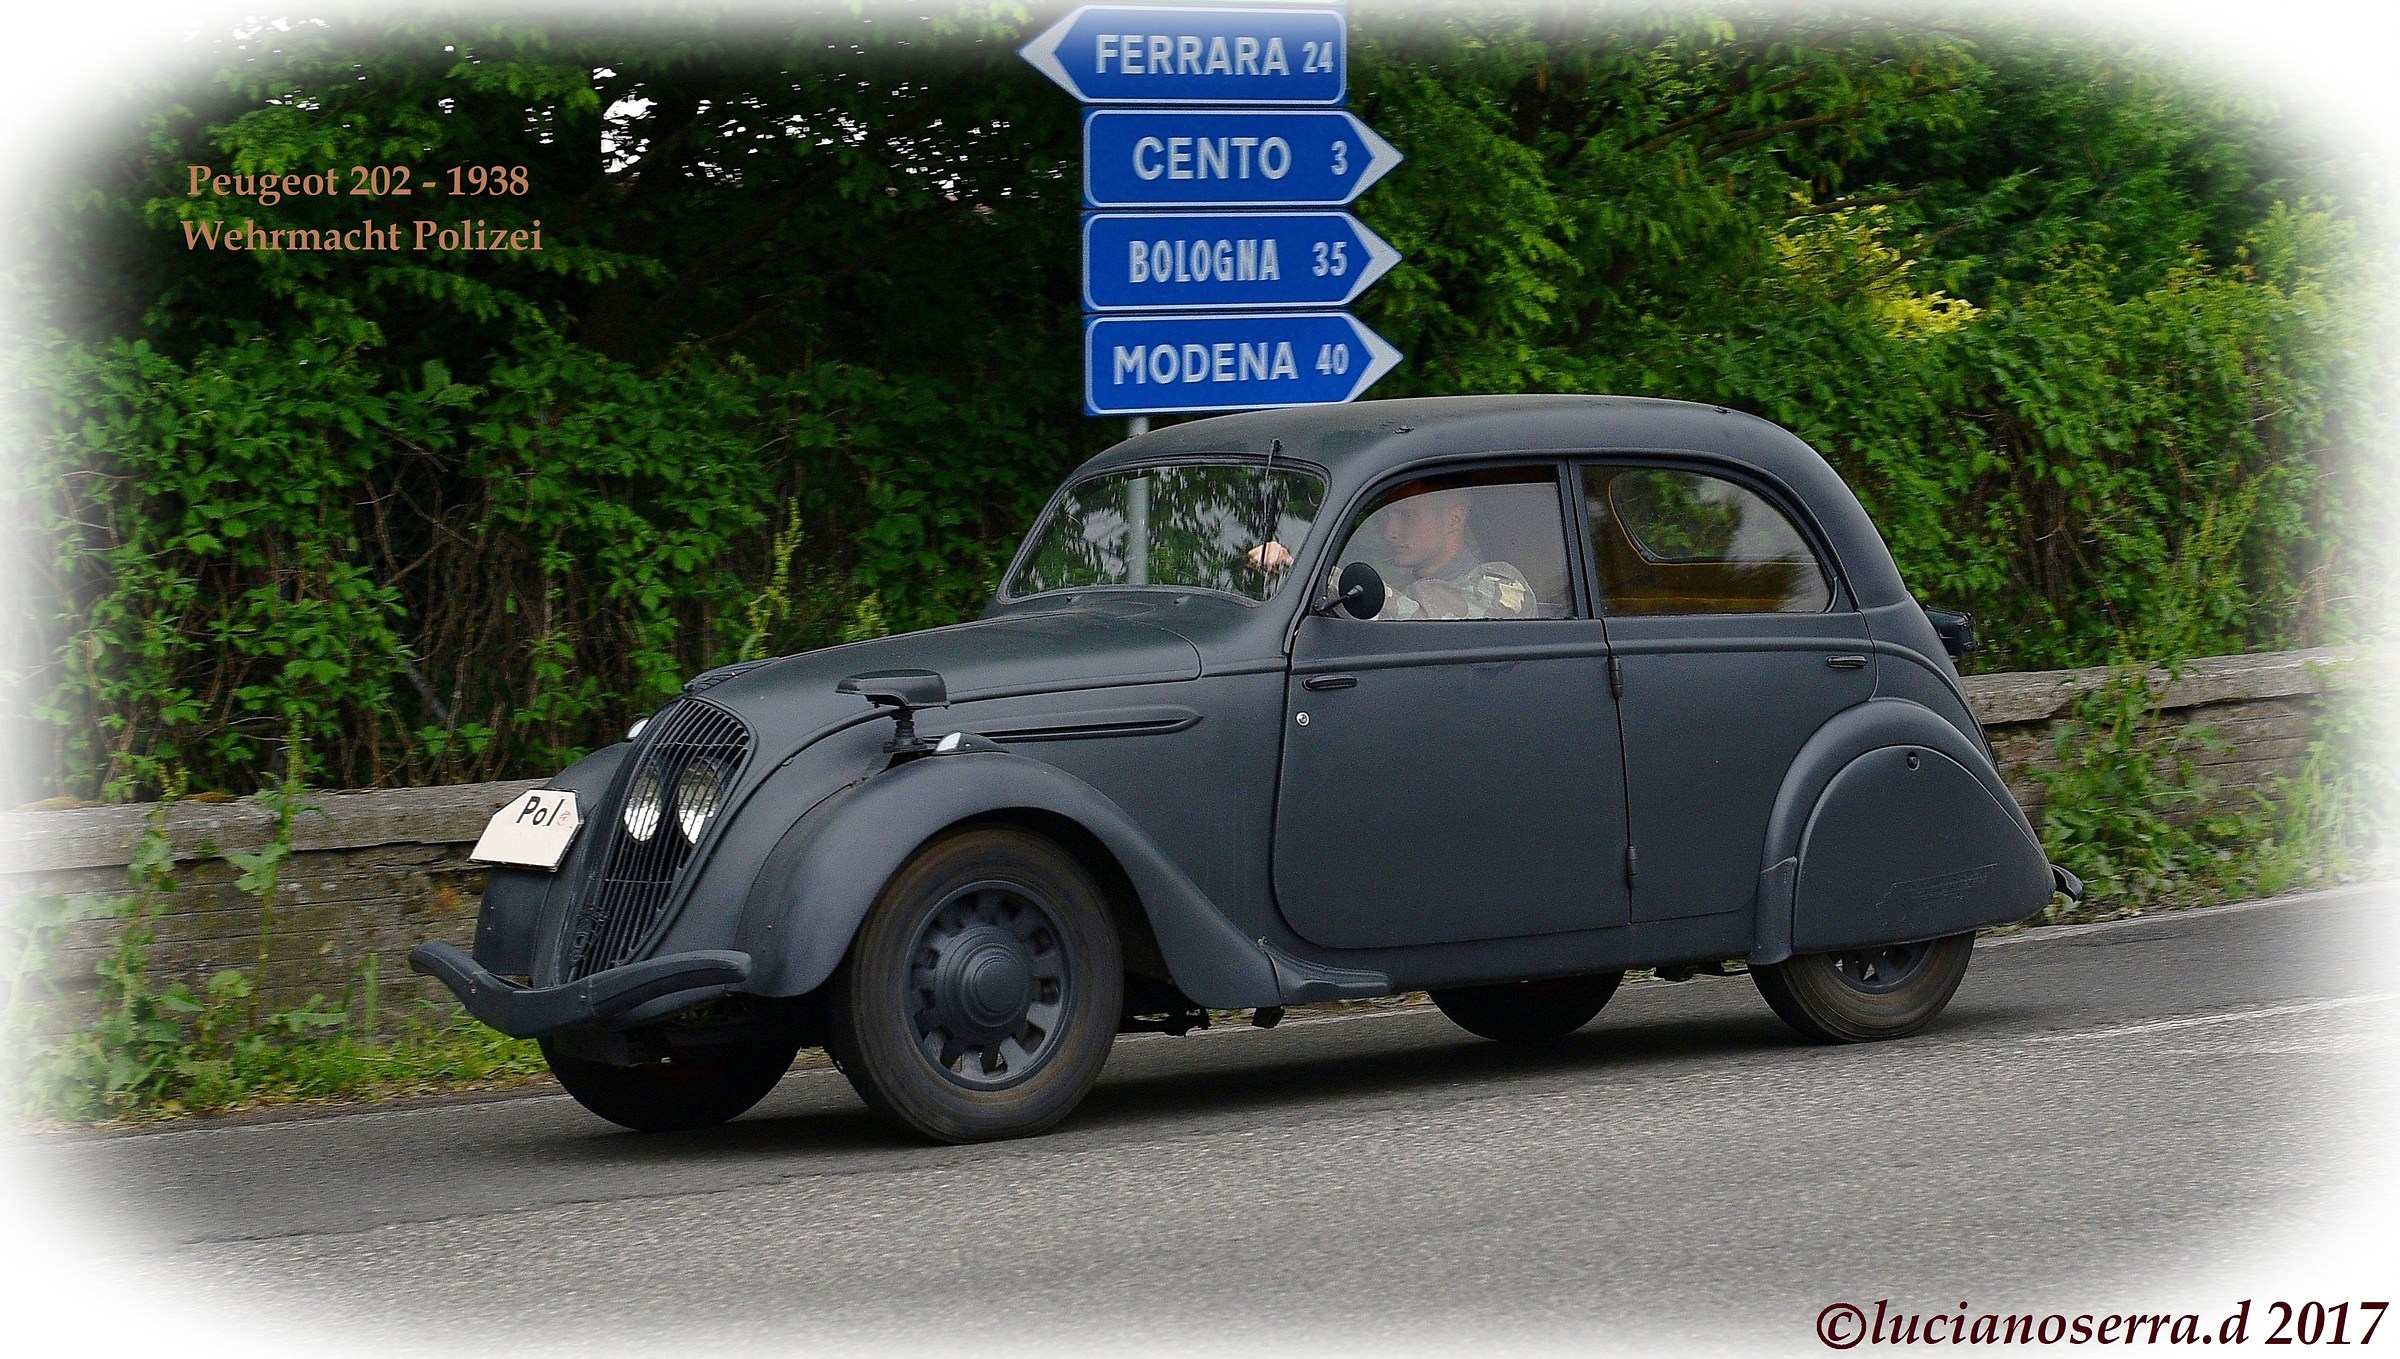 Peugeot 202 - 1938 Wehrmacht Polizei...